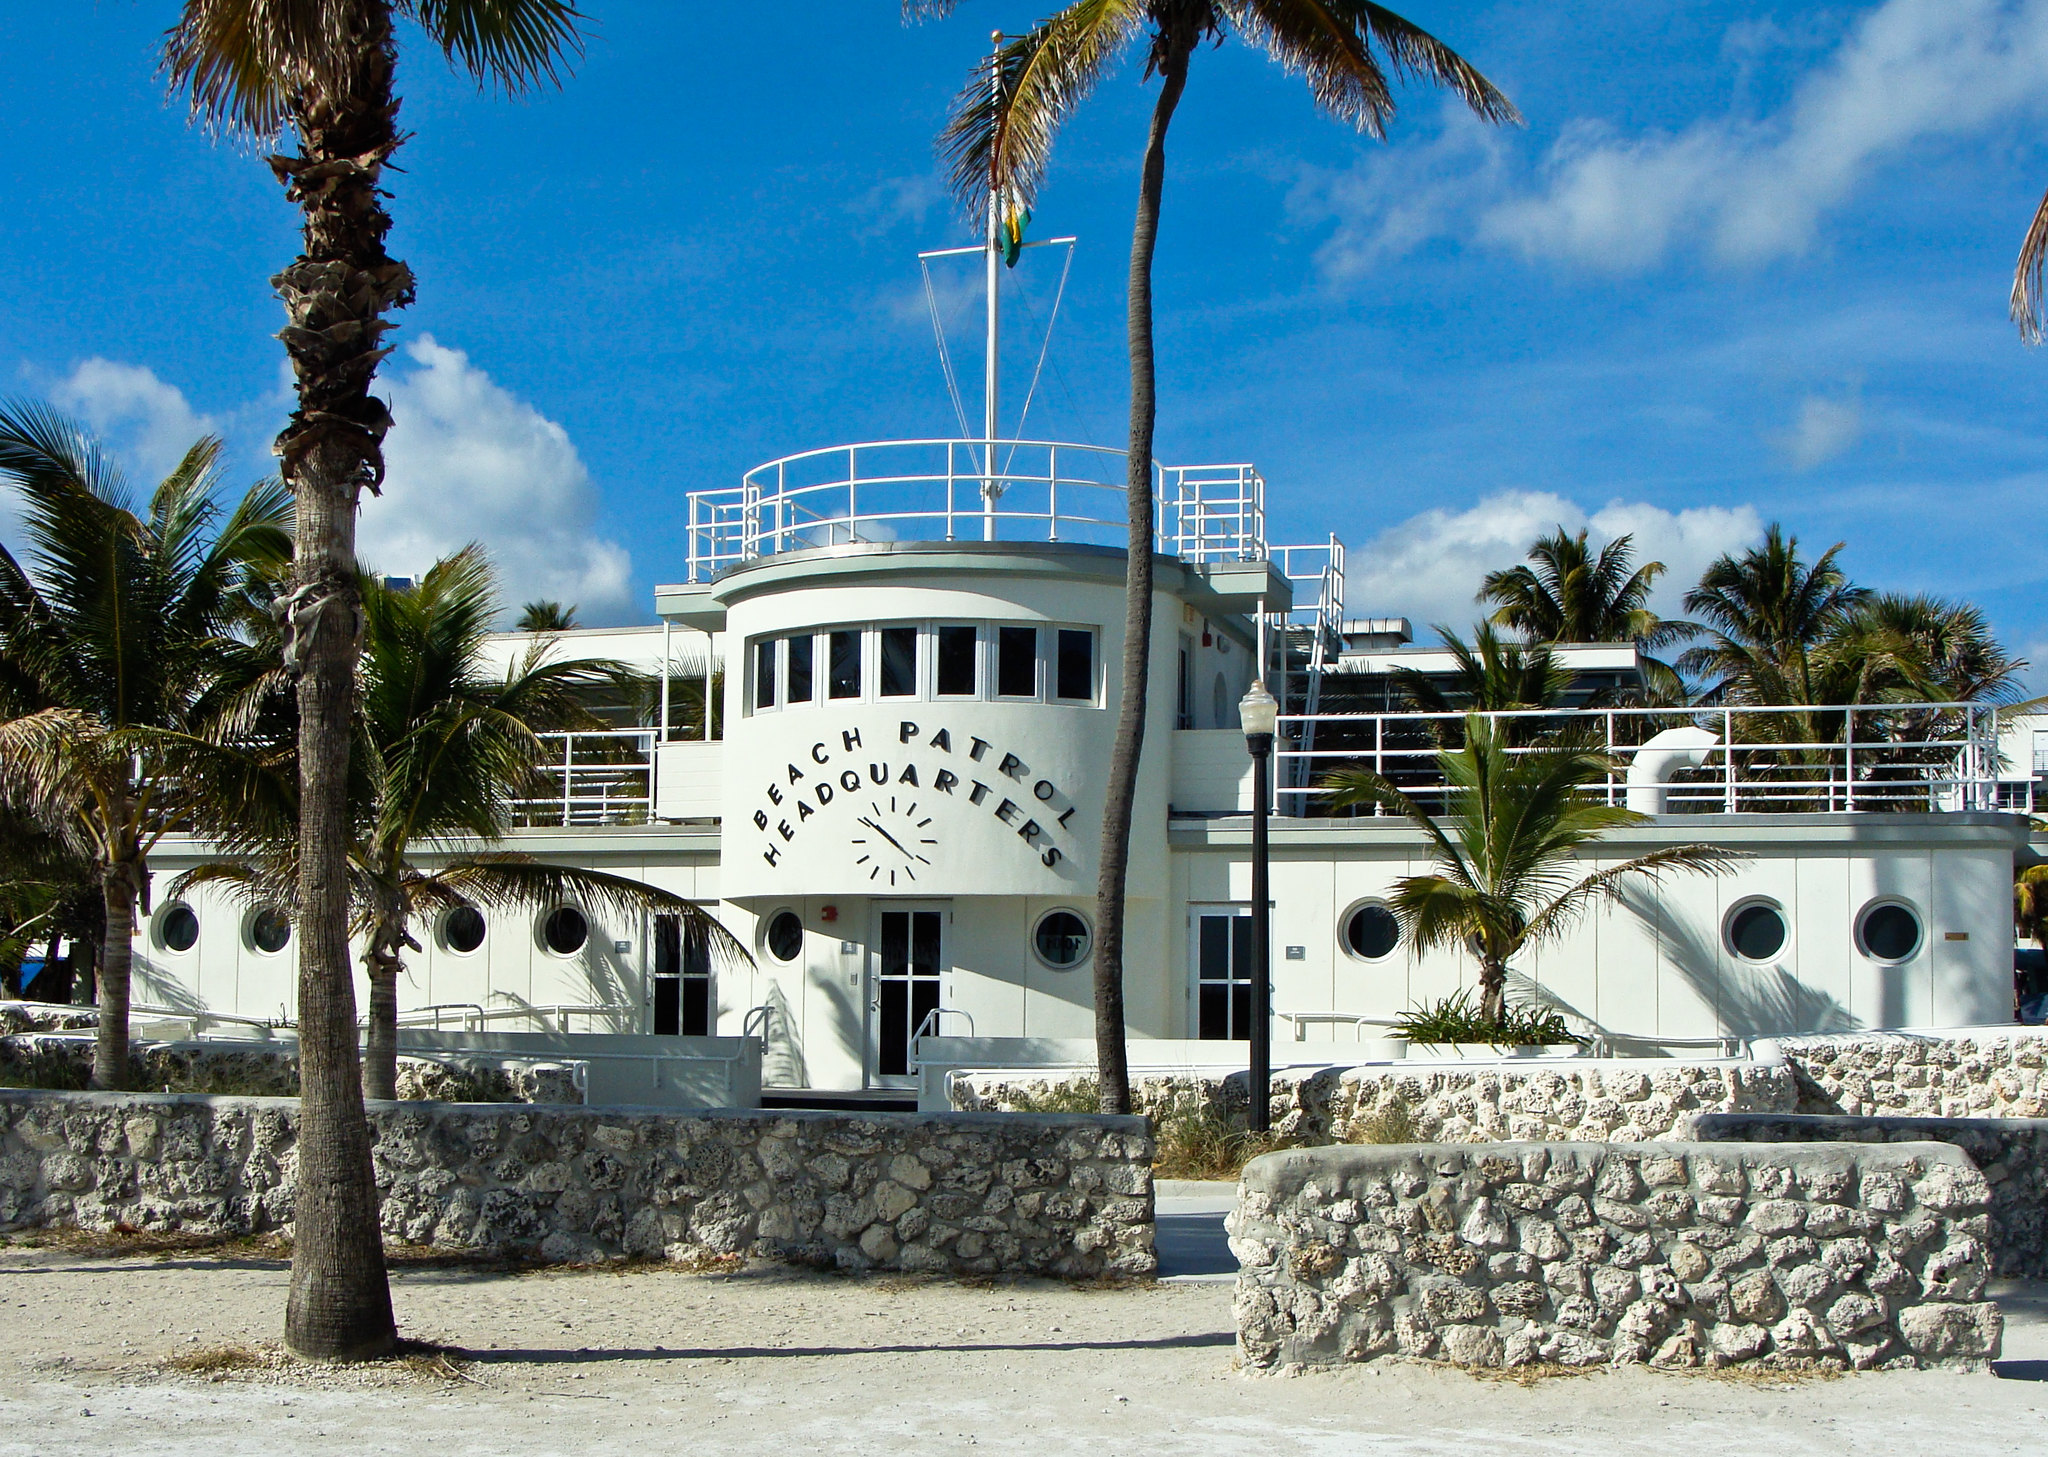 Edificio Art Déco de Miami de color blanco, sede del equipo de rescate marítimo, con el letrero “Beach Patrol Headquarters” en la fachada